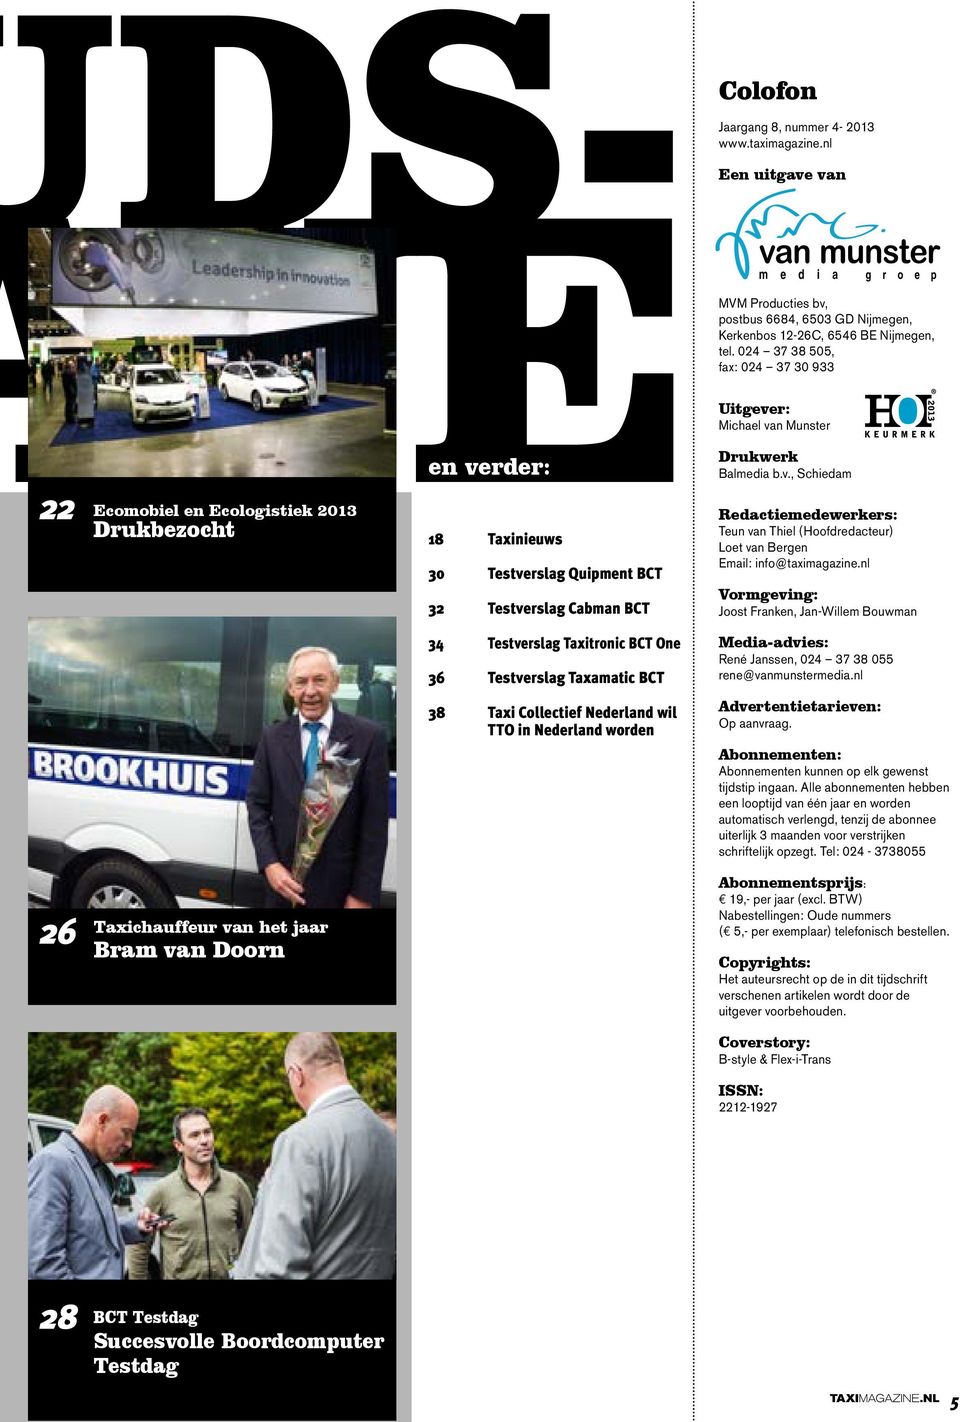 024 37 38 505, fax: 024 37 30 933 Uitgever: Michael van Munster Drukwerk Balmedia b.v., Schiedam Redactiemedewerkers: Teun van Thiel (Hoofdredacteur) Loet van Bergen Email: info@taximagazine.